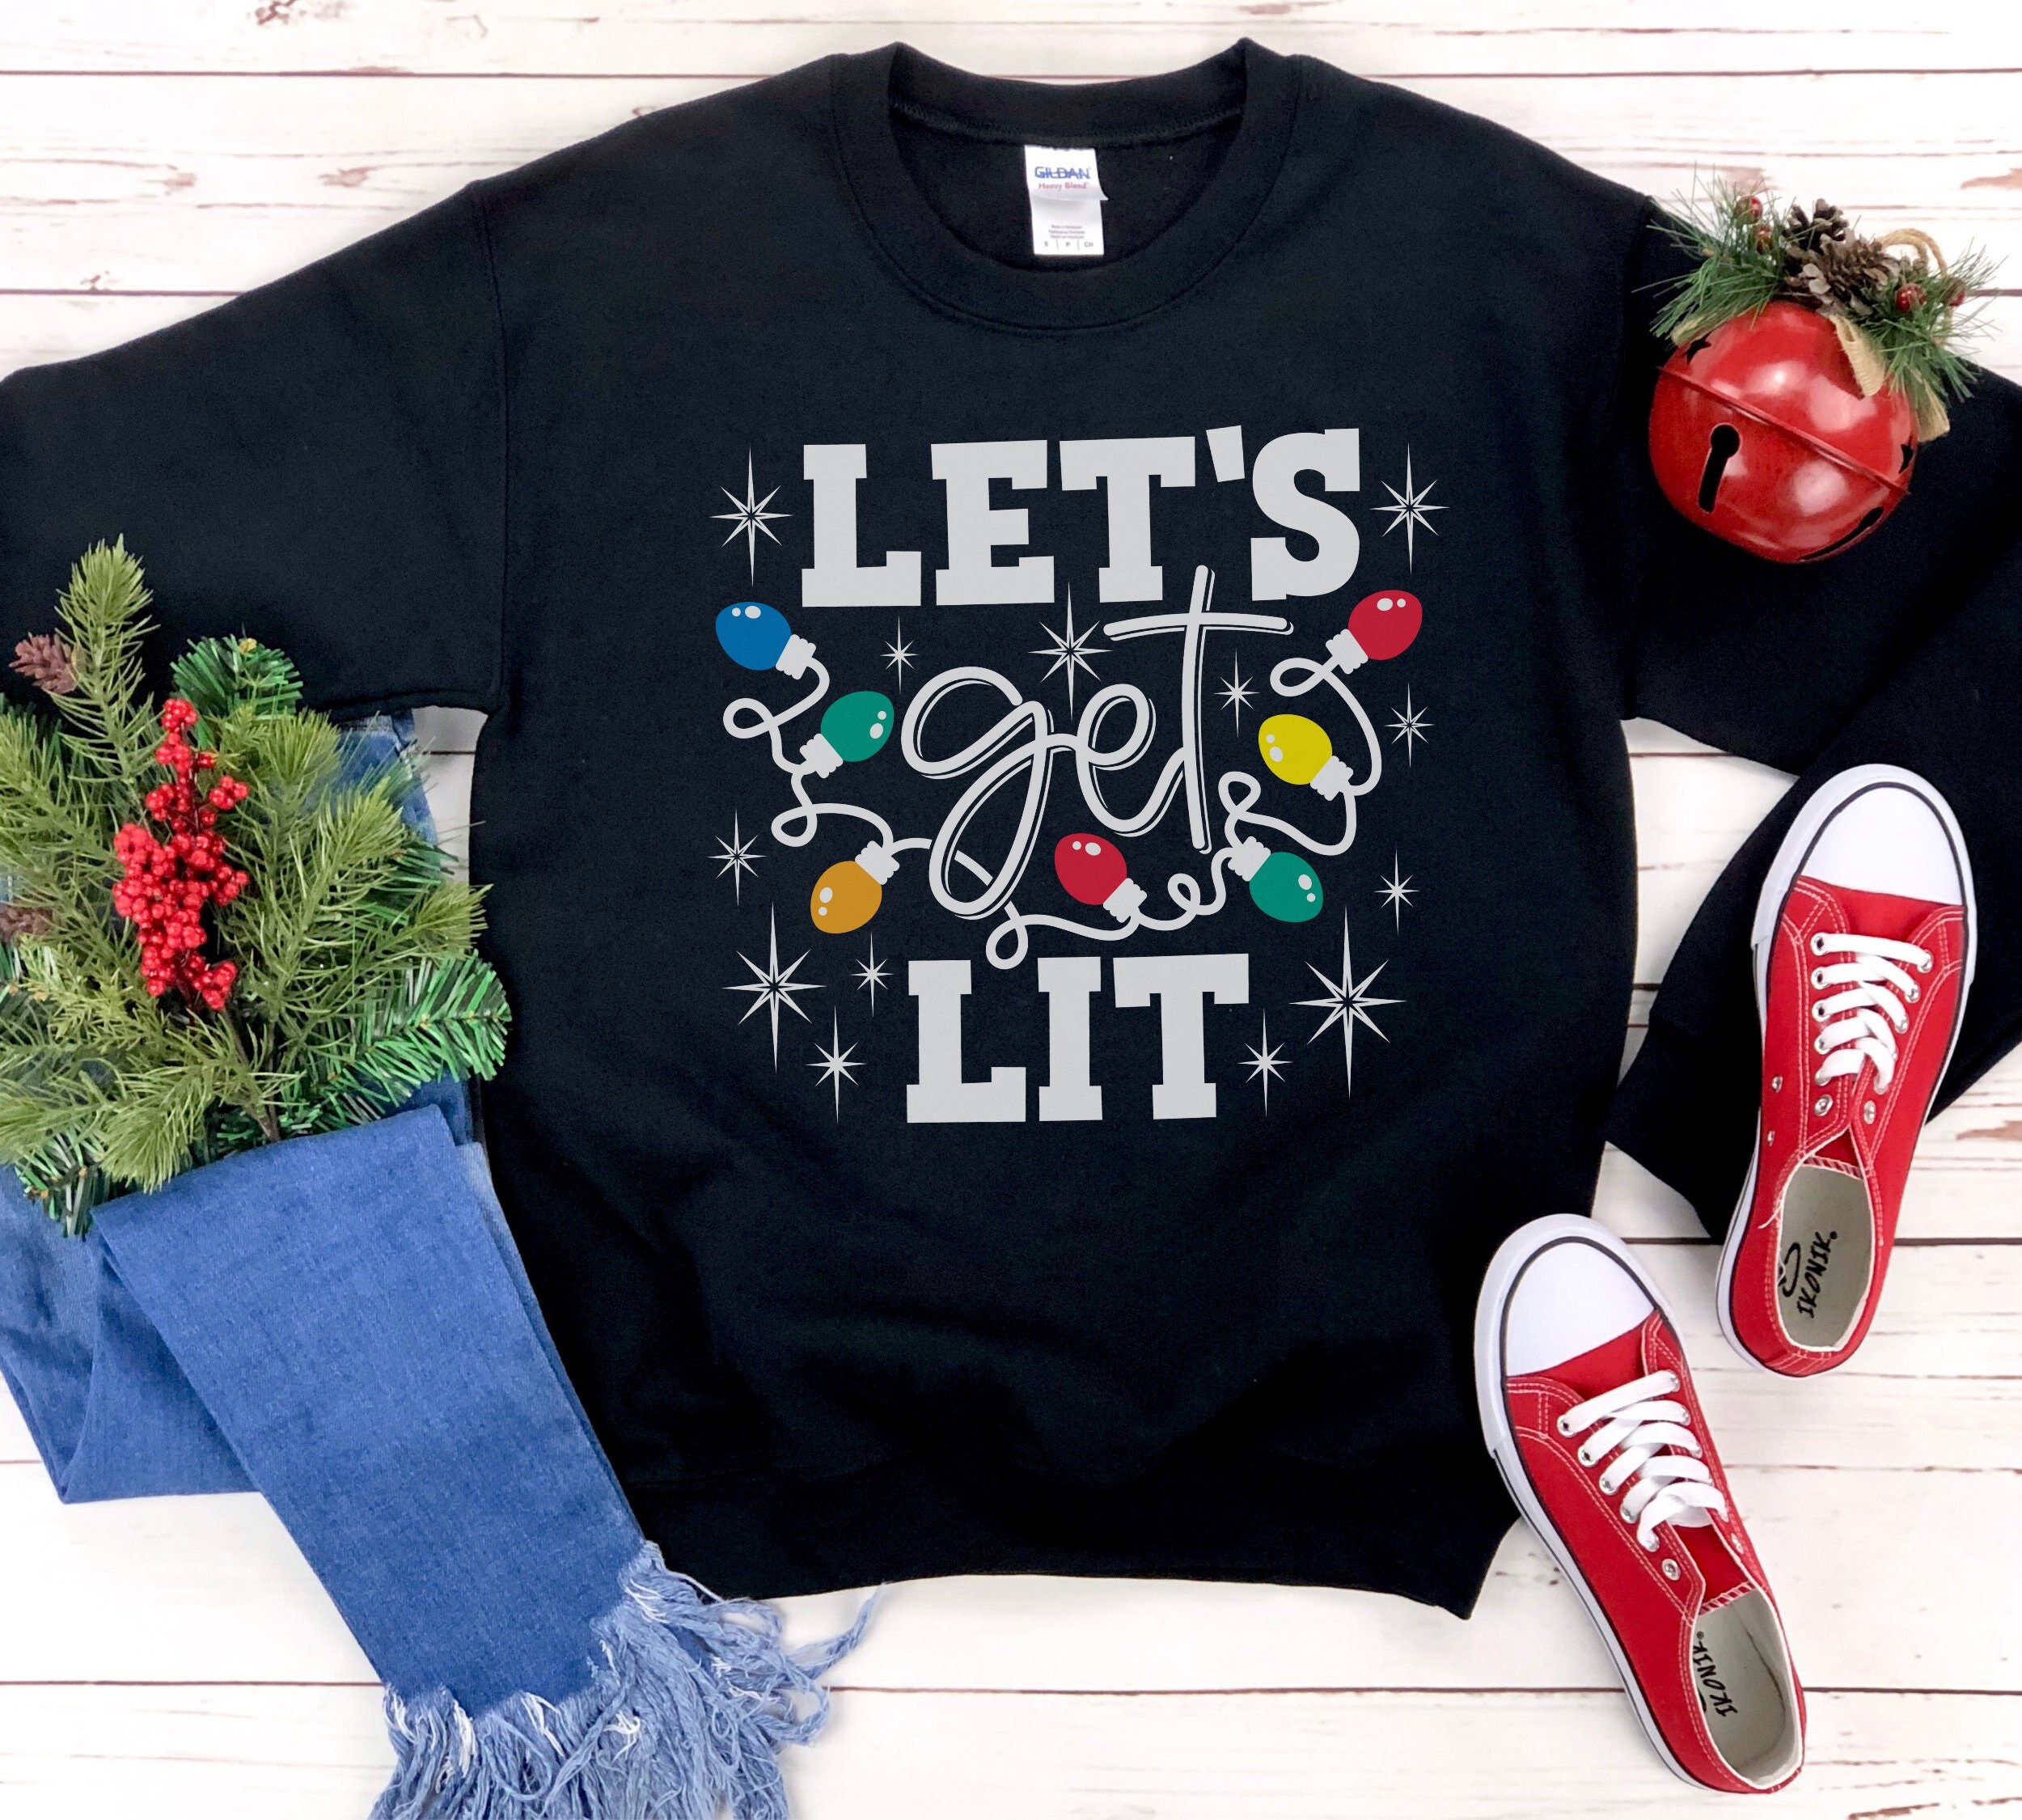 Louis Litt let's get litt up Christmas sweater, t-shirt, hoodie